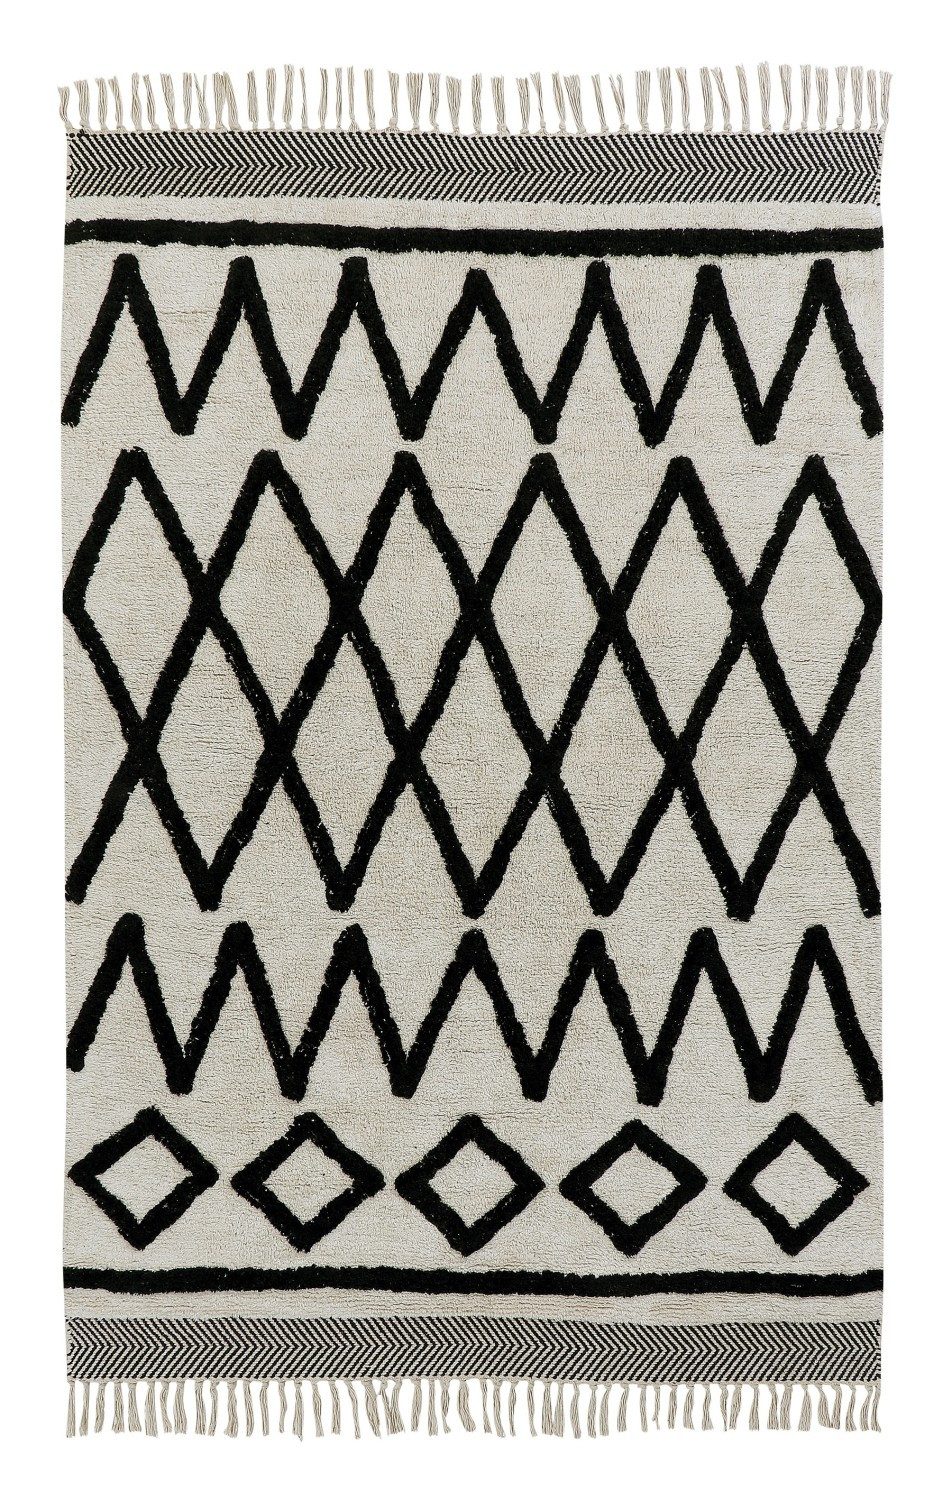 Kinderteppich Teppich, Crossy, 100x160 cm, handgetuftete Baumwolle, Scandicliving, rechteckig